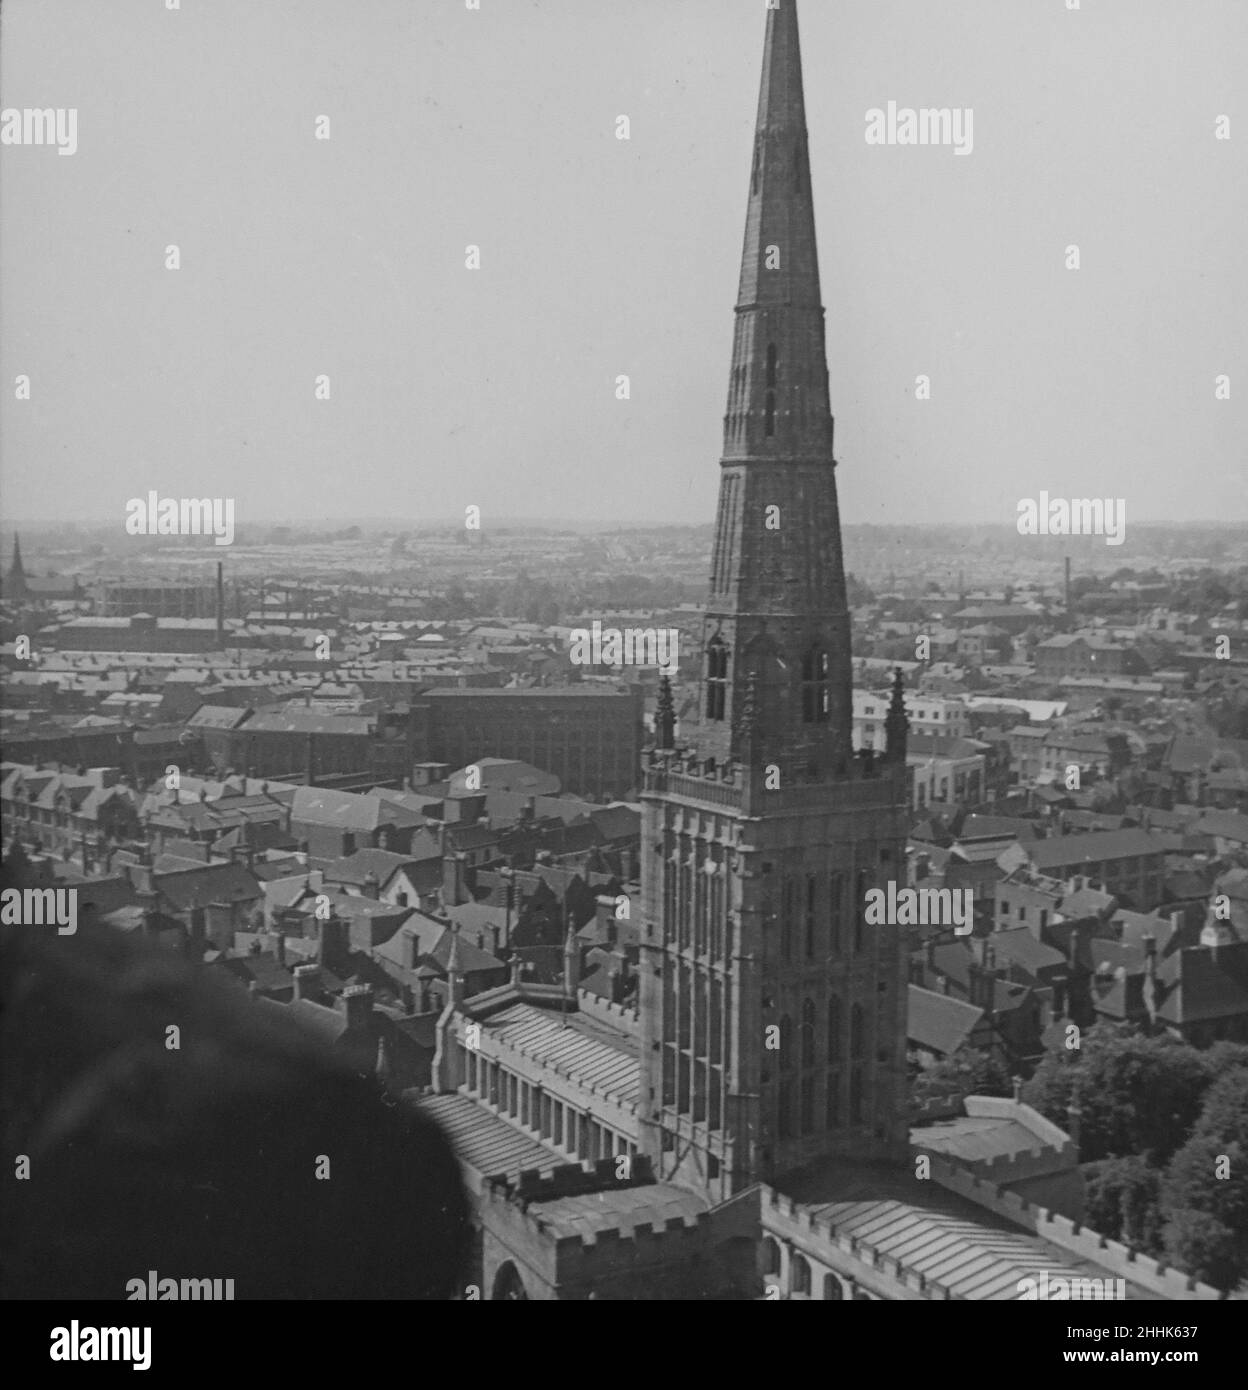 Chiesa della Santissima Trinità, Coventry circa 1936. Con vista sulla città sullo sfondo, si affaccia sulla zona di Radford della città. Questa immagine è stata presa prima del bombardamento di Coventry nel novembre 1940. La Santissima Trinità rimane intatta. Foto Stock